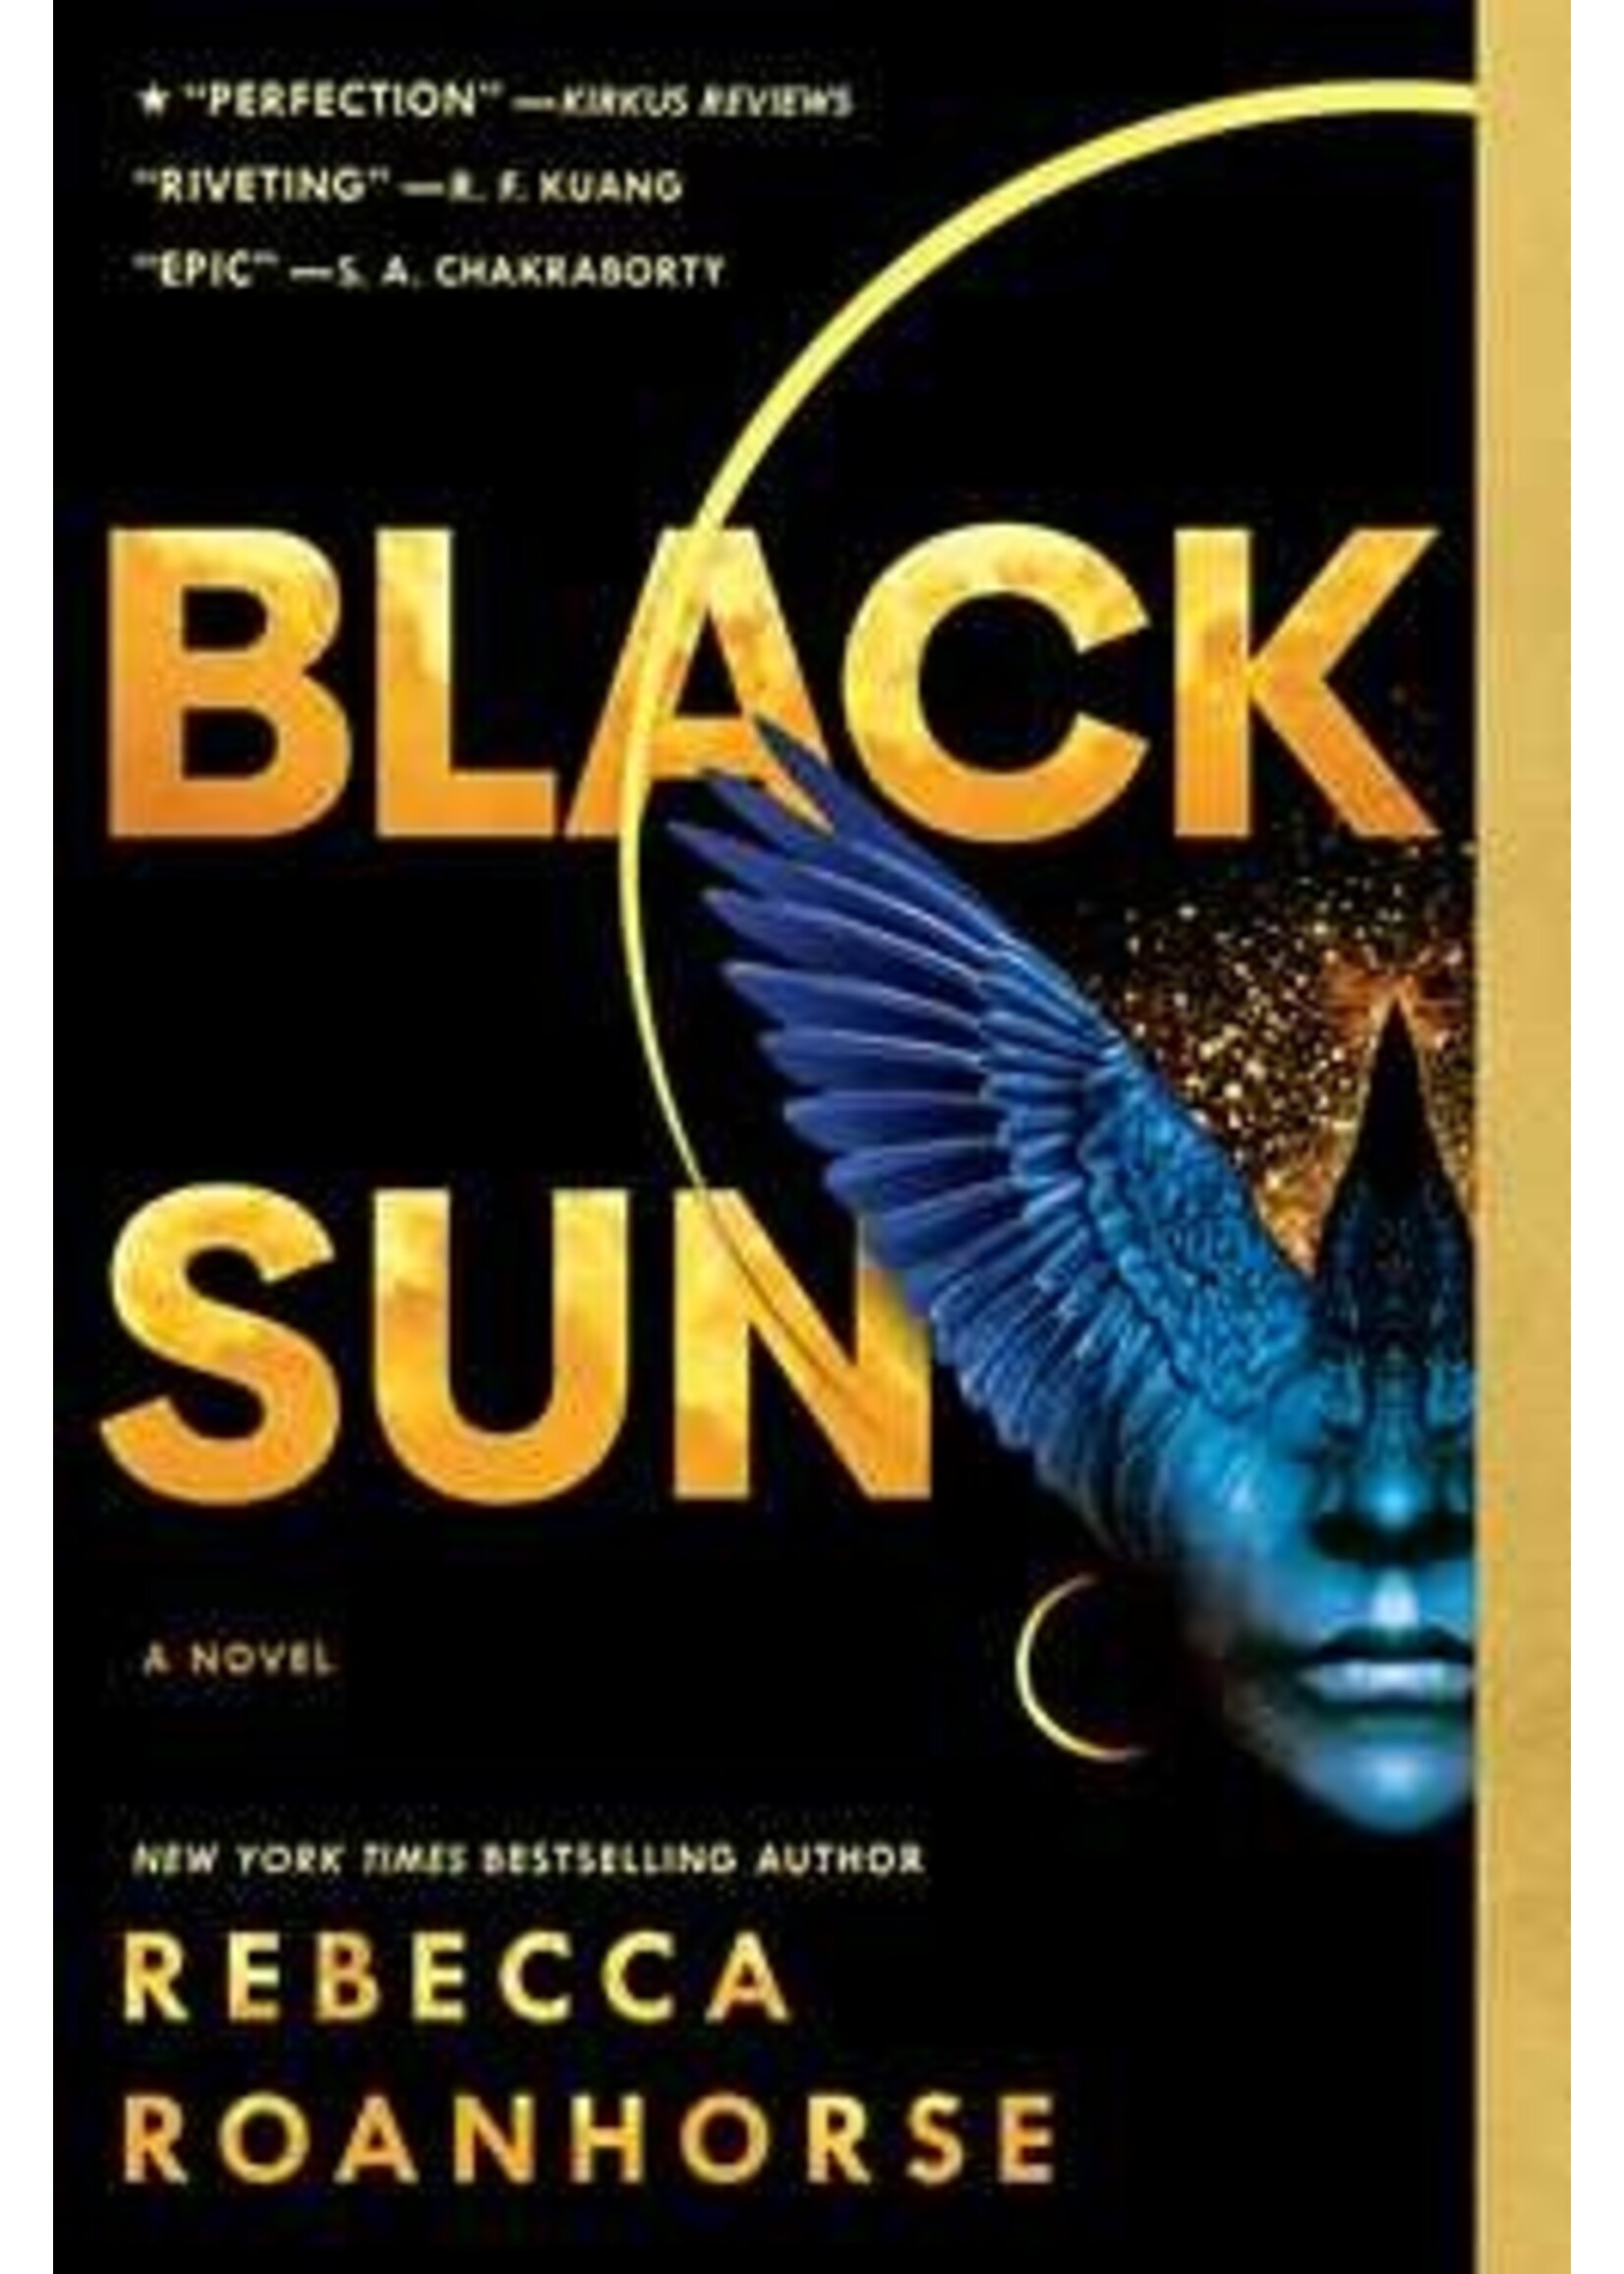 Black Sun by Rebecca Roanhorse